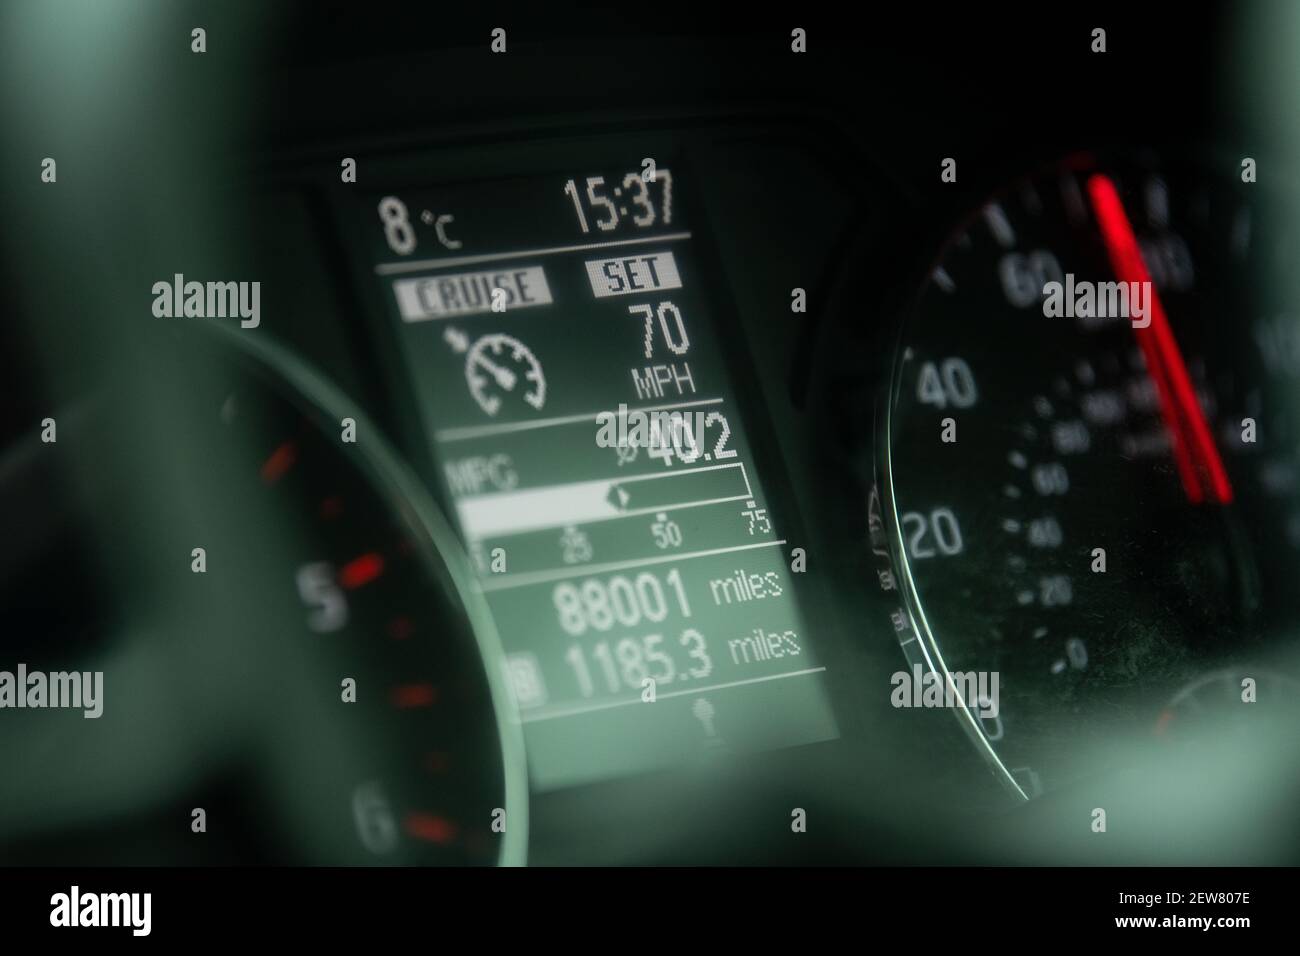 Indicateur de vitesse ou indicateur de vitesse de la voiture qui se déplace à 70 km/h avec Régulateur de vitesse réglé à 70 mi/h - Royaume-Uni Banque D'Images